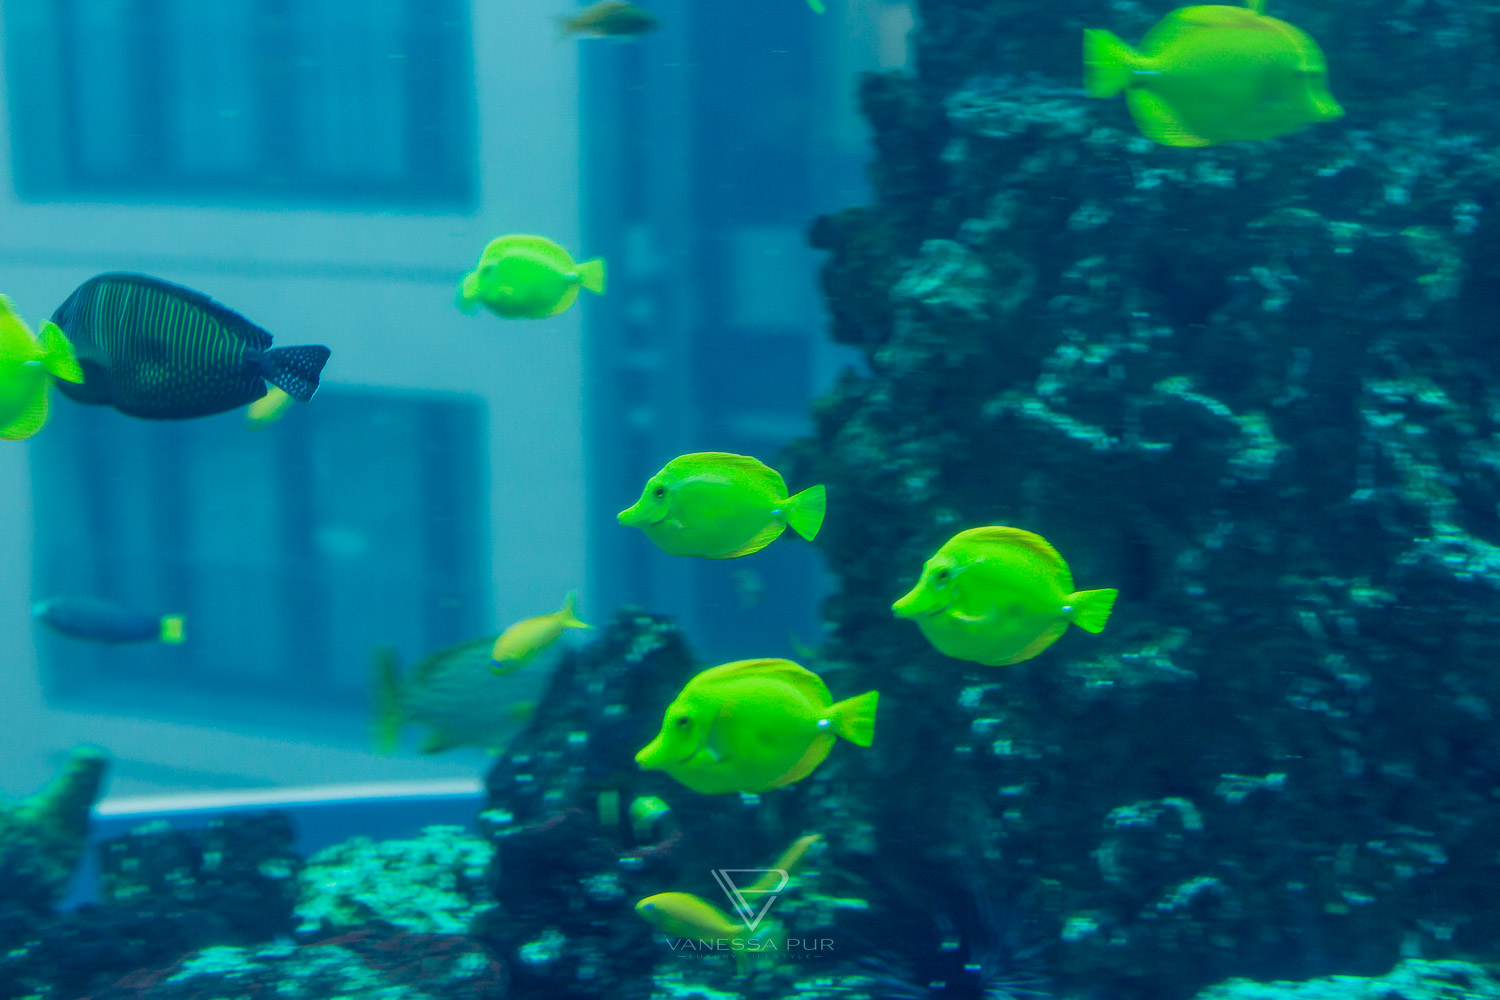 Aquadom Berlin - Riesiges Aquarium mit Aufzug im Hotel - Heiraten im Aquarium Aufzug - eine besondere Hochzeitslocation - 1500 Fische als Trauzeugen